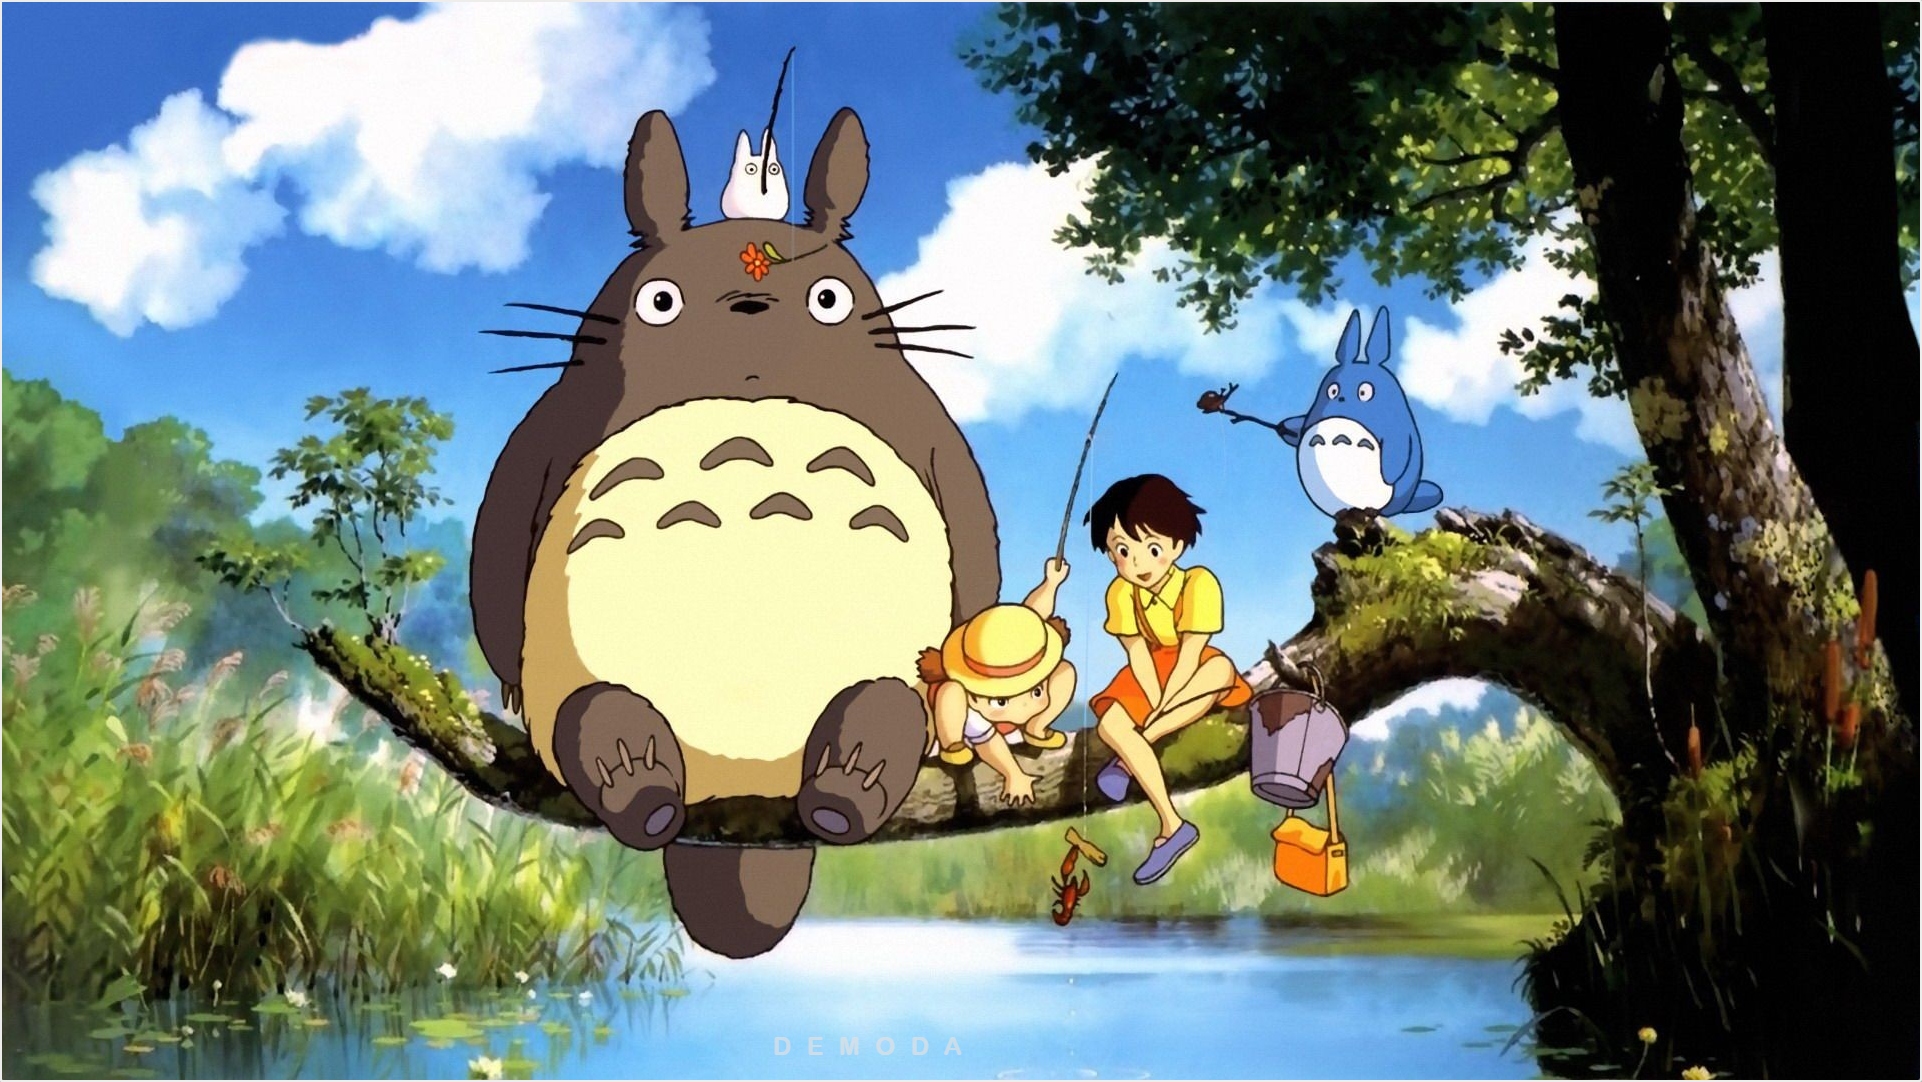 Hình Nền Totoro Đẹp - Totoro: Thật tuyệt vời khi có thể thưởng thức hình nền Totoro đẹp như mơ. Với nét đẹp ngọt ngào, hình ảnh Totoro sẽ giúp bạn thư giãn sau những giờ làm việc căng thẳng.